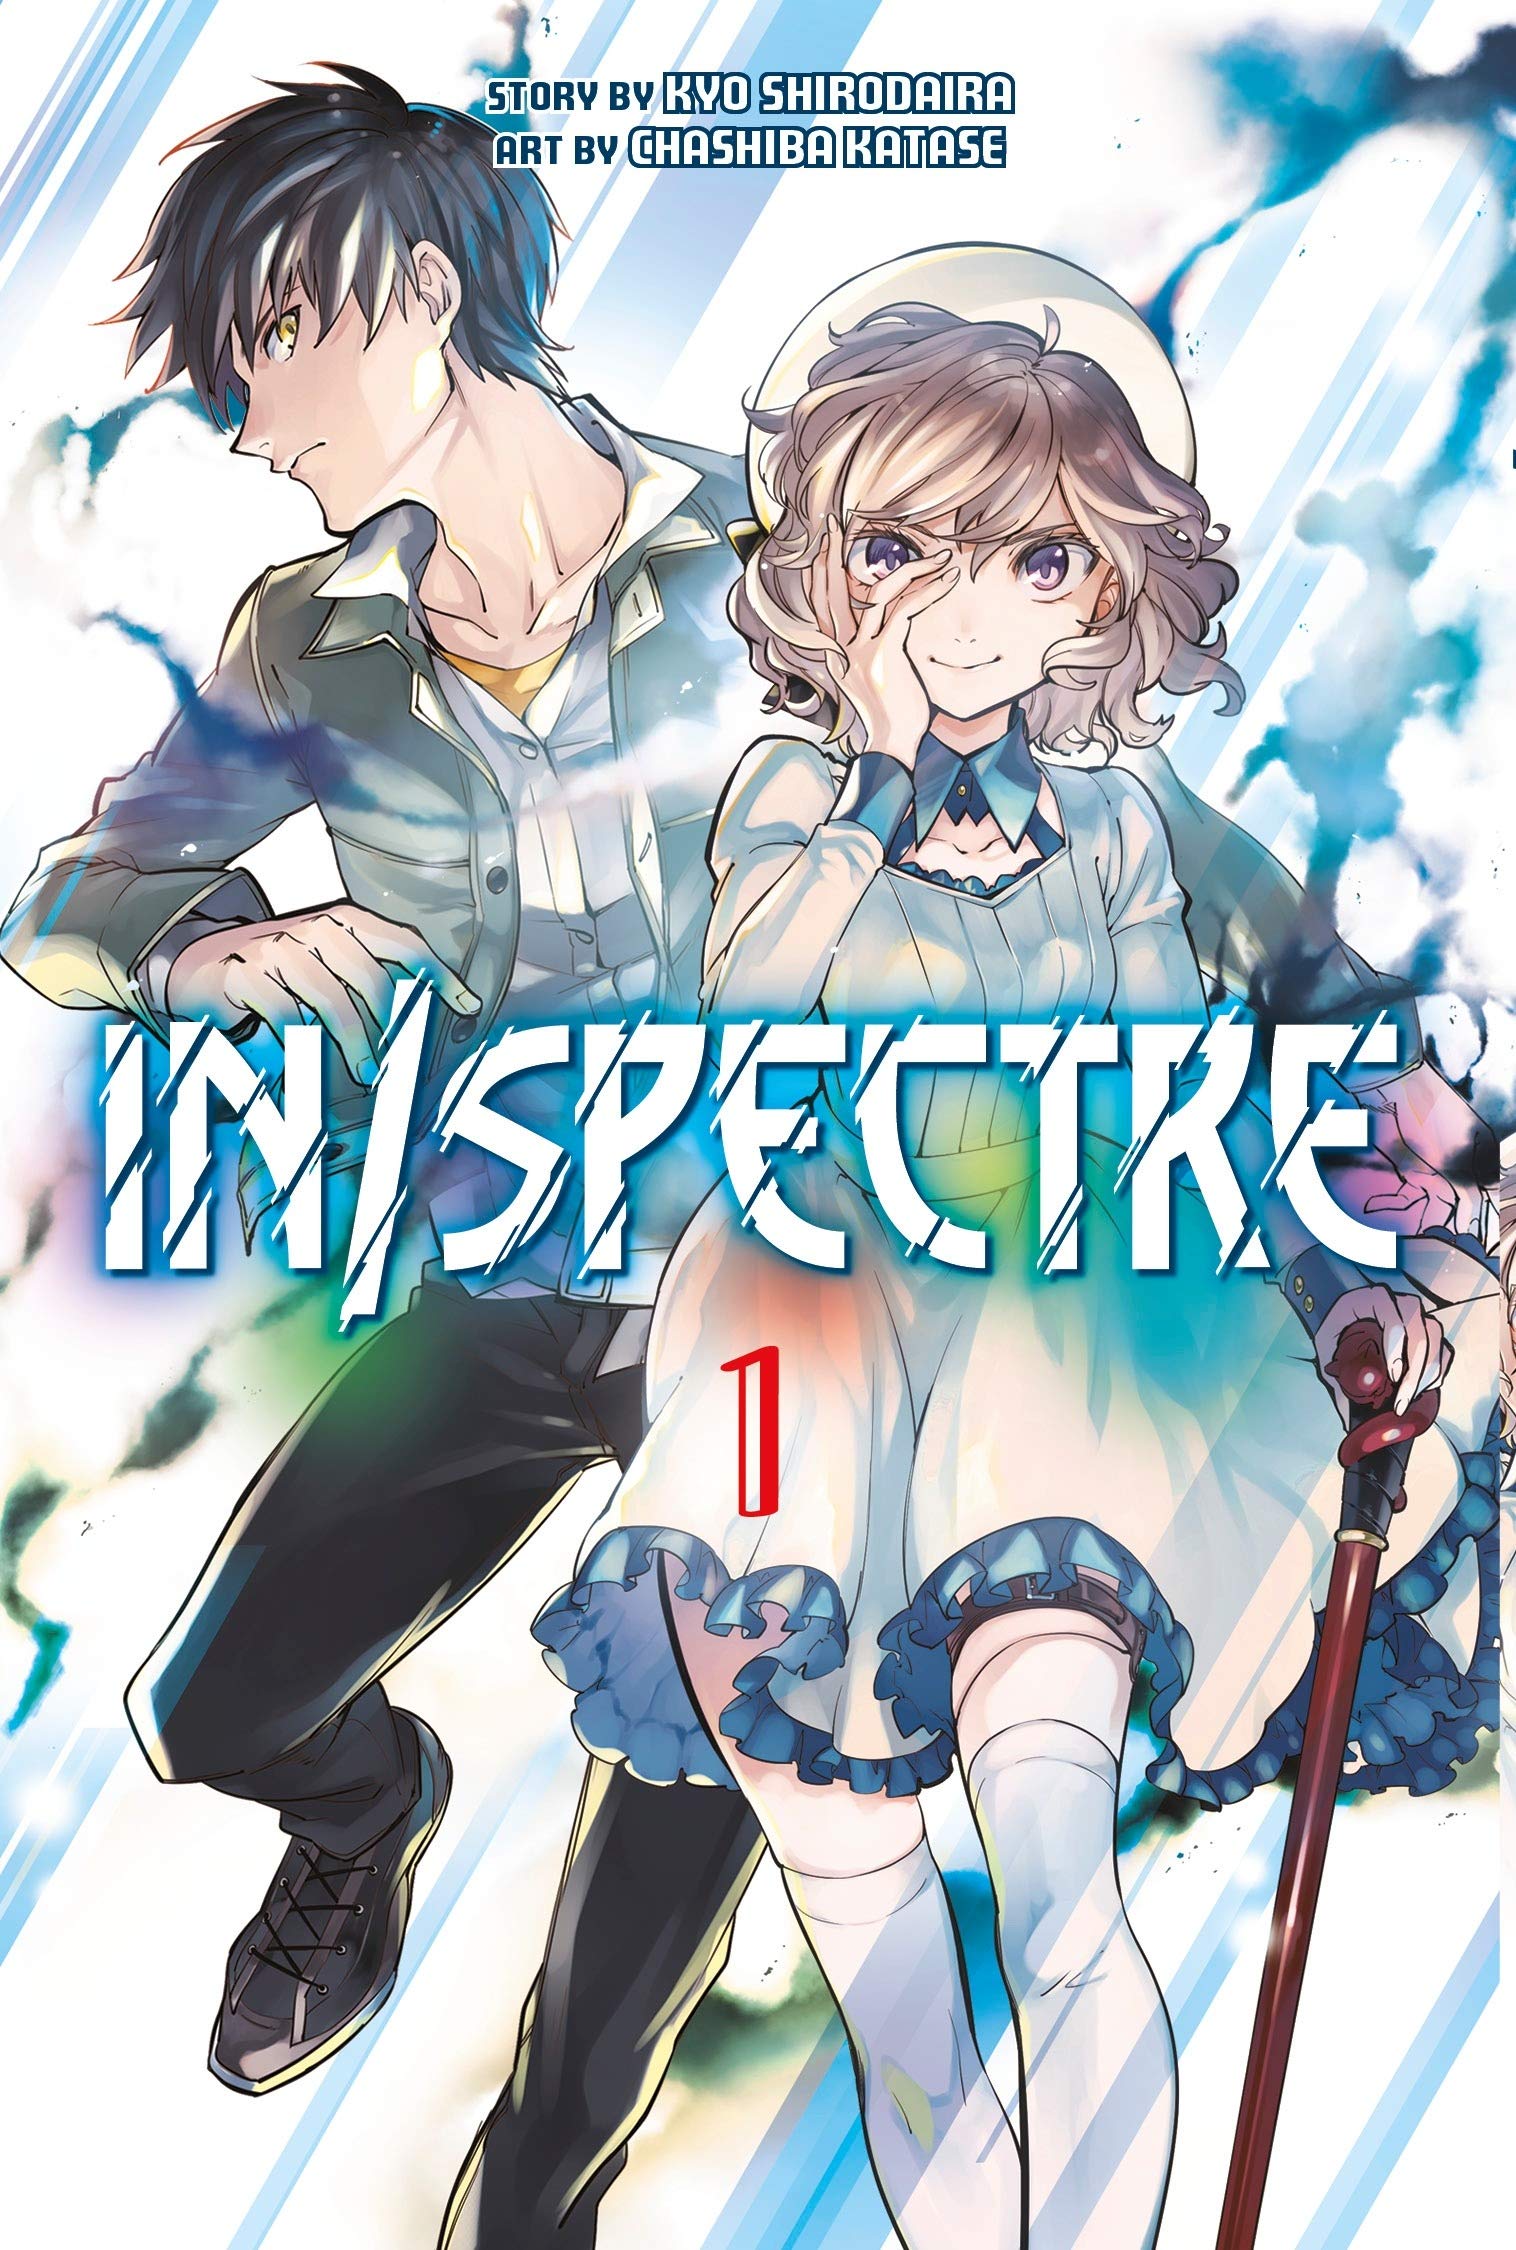 In/Spectre - Volume 1 | Kyo Shirodaira, Chashiba Katase